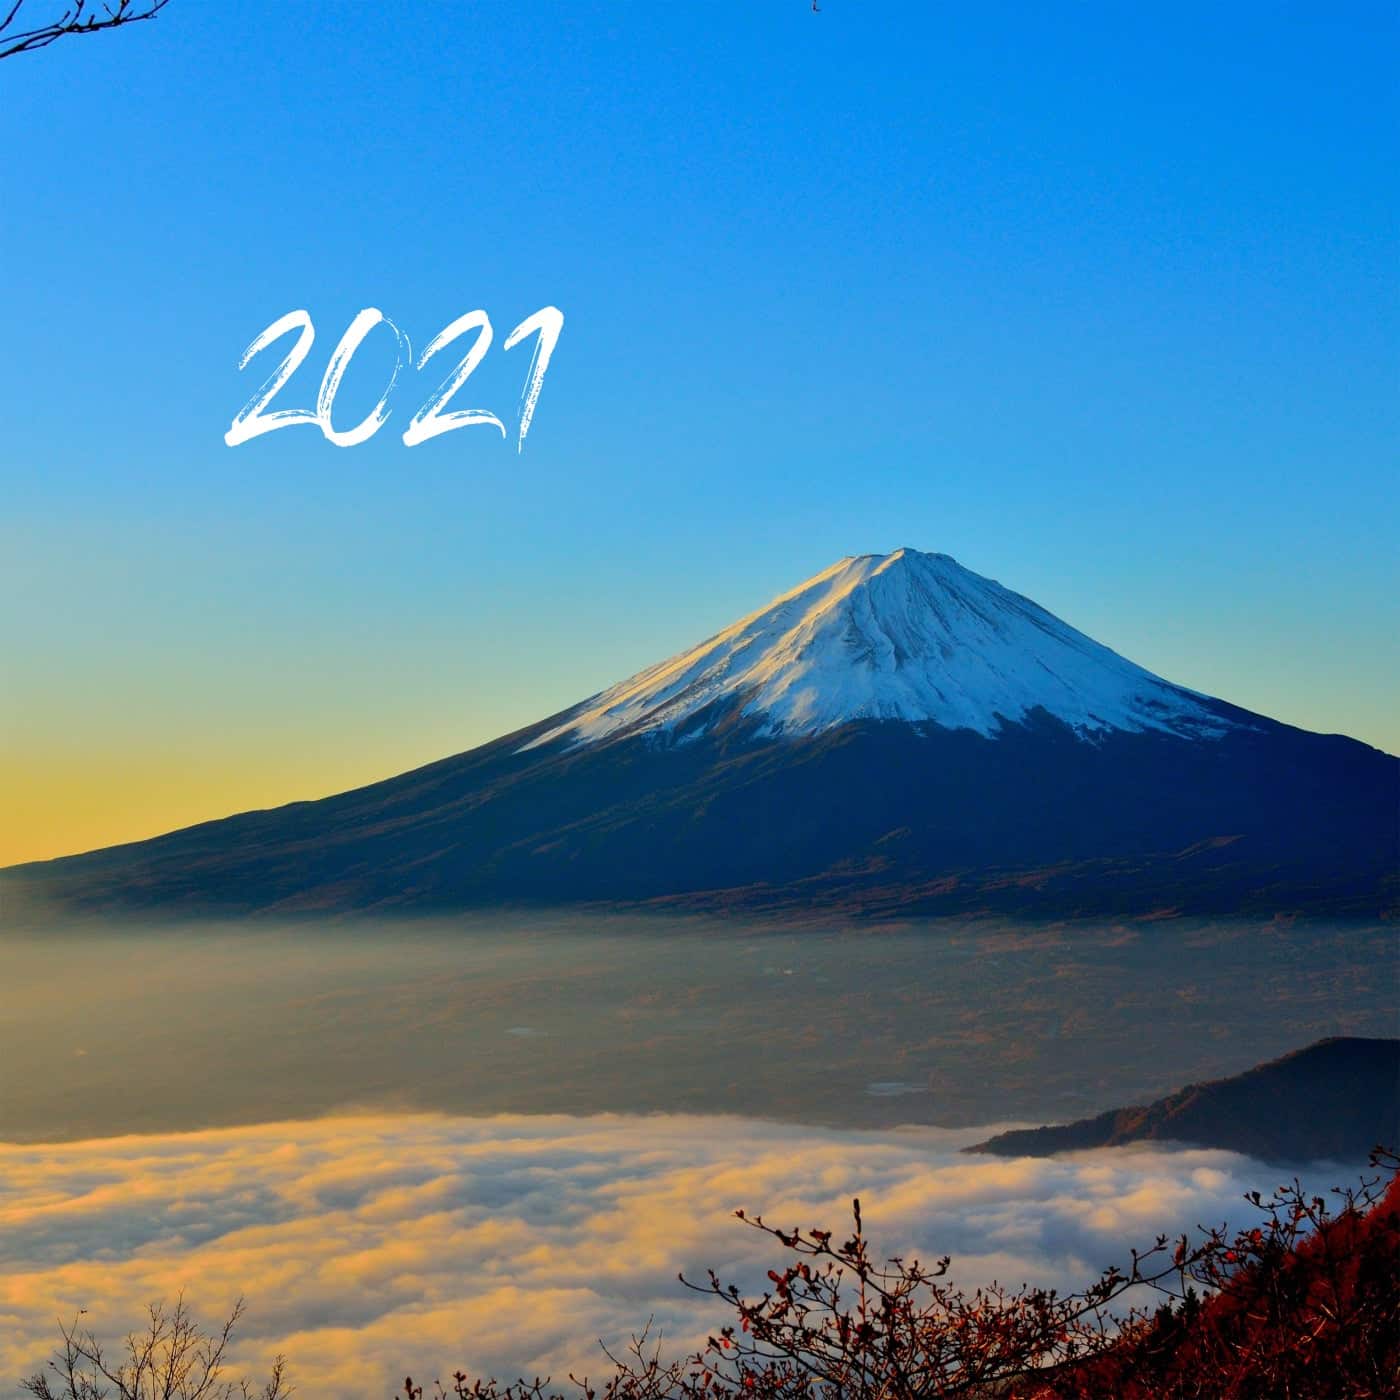 “2021” compilation album released